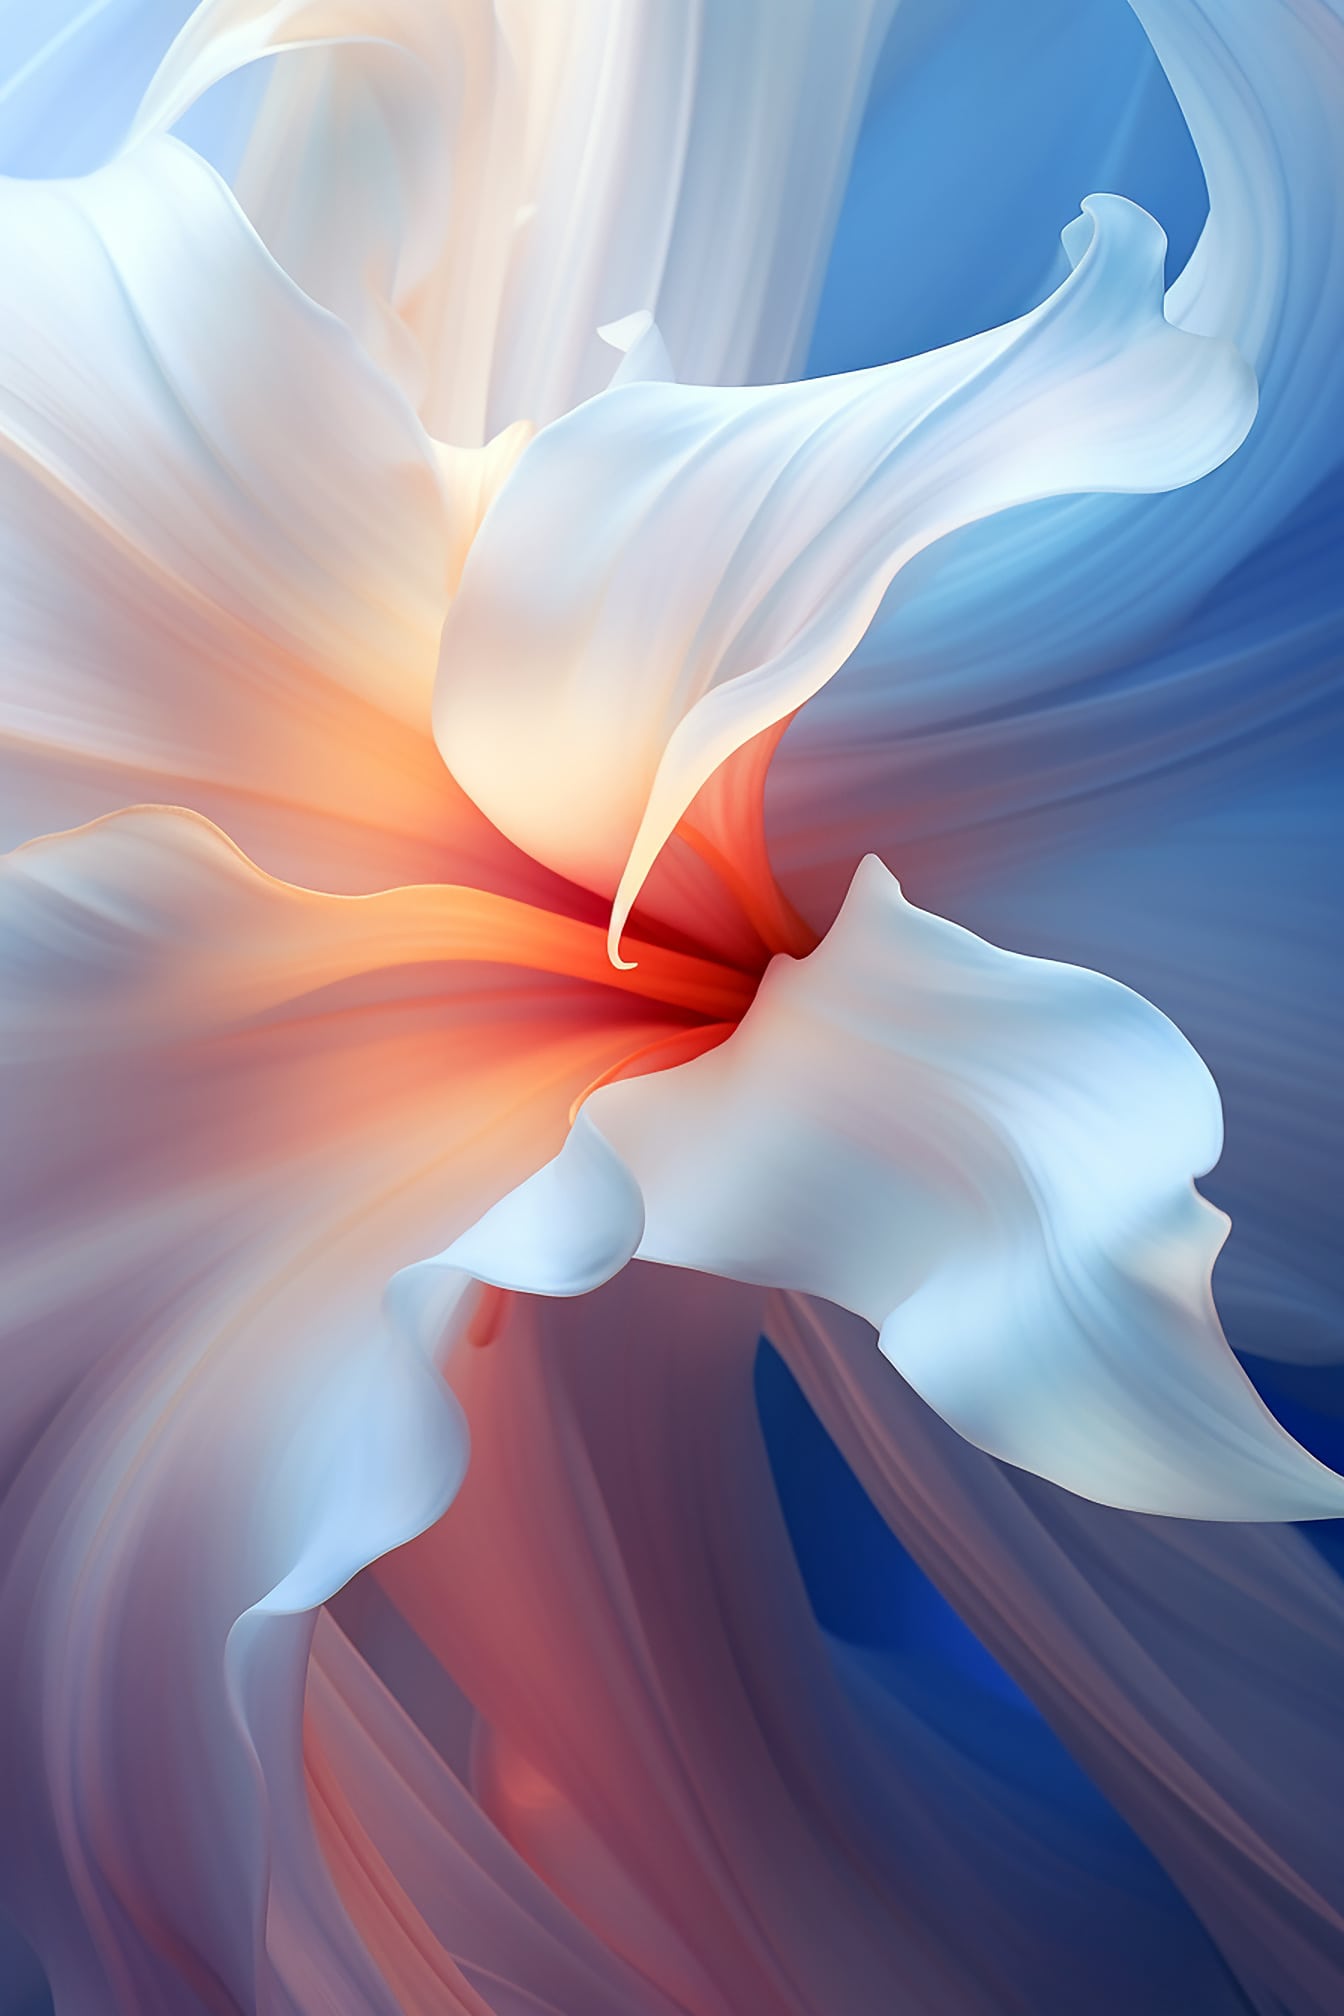 Petale de flori albe Ilustrație digitală originală cu curbă dinamică și netedă